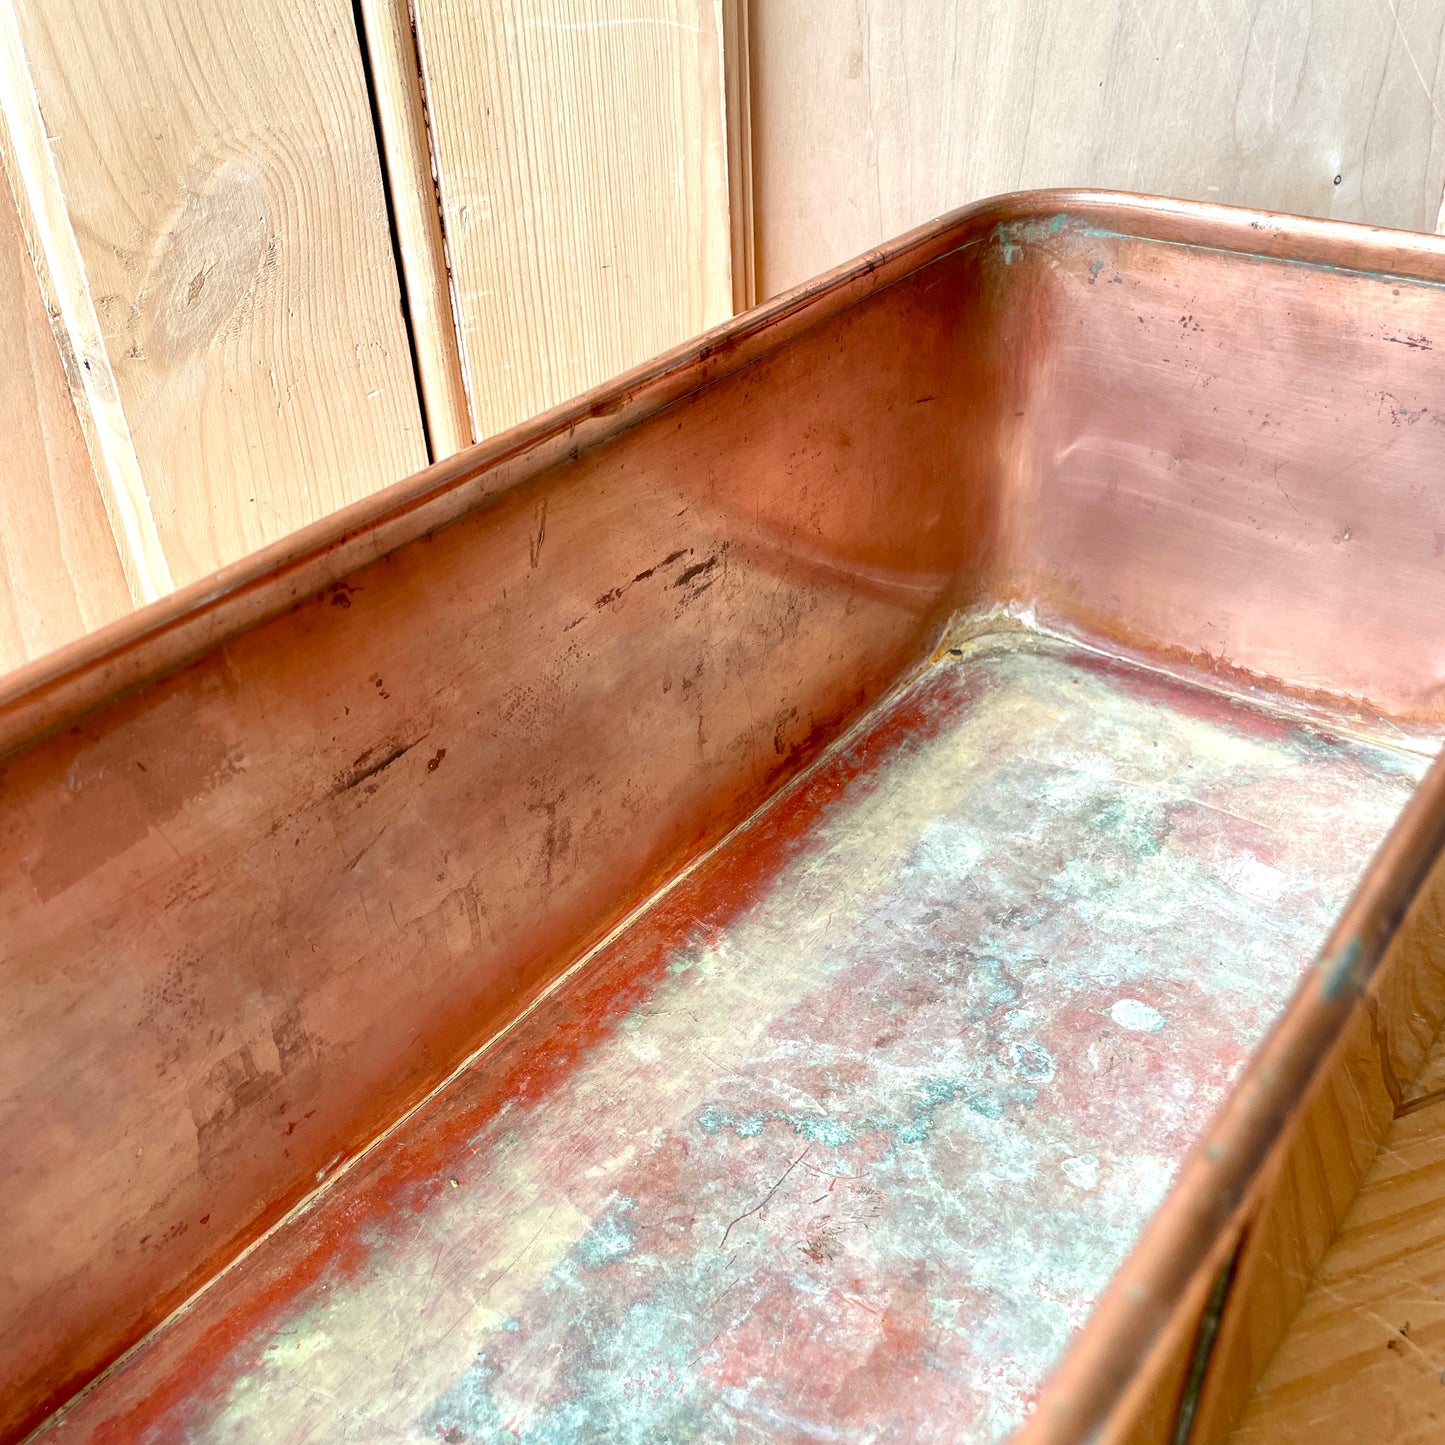 Vintage Copper trough